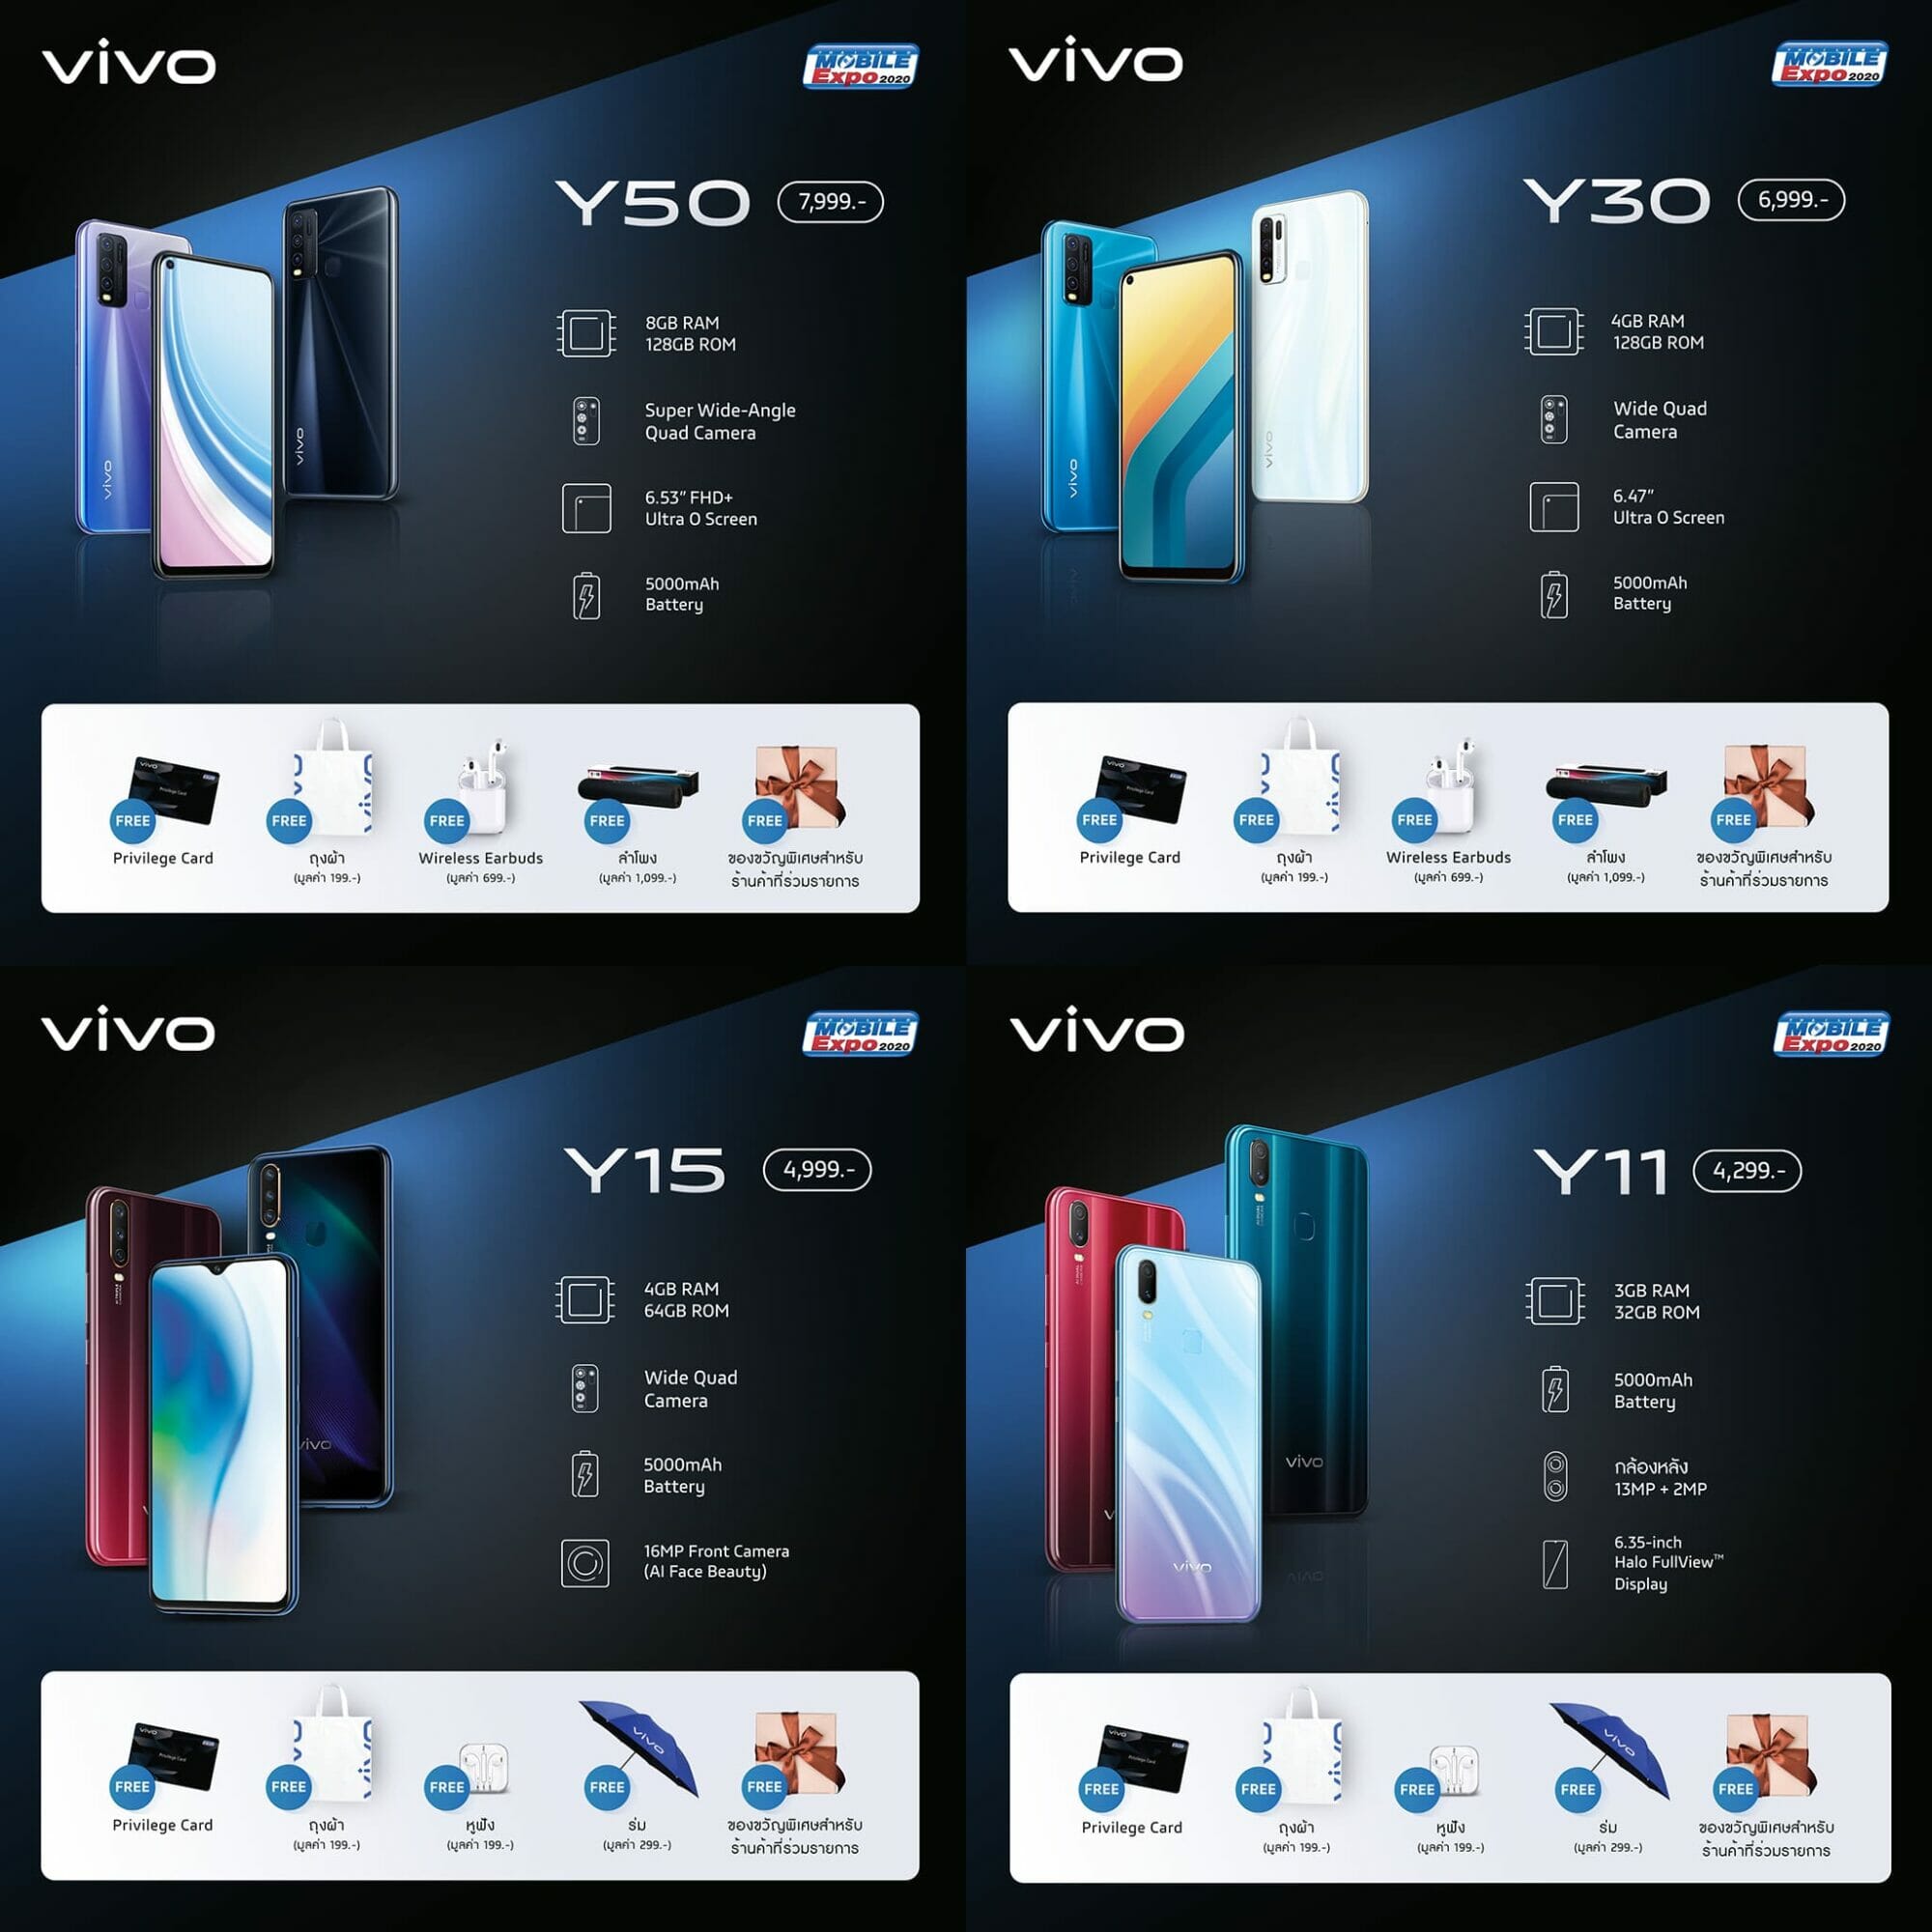 สัมผัสนวัตกรรมใหม่กับ Vivo ในงาน TME 2020 พร้อมโปรโมชั่นสุดคุ้ม 5